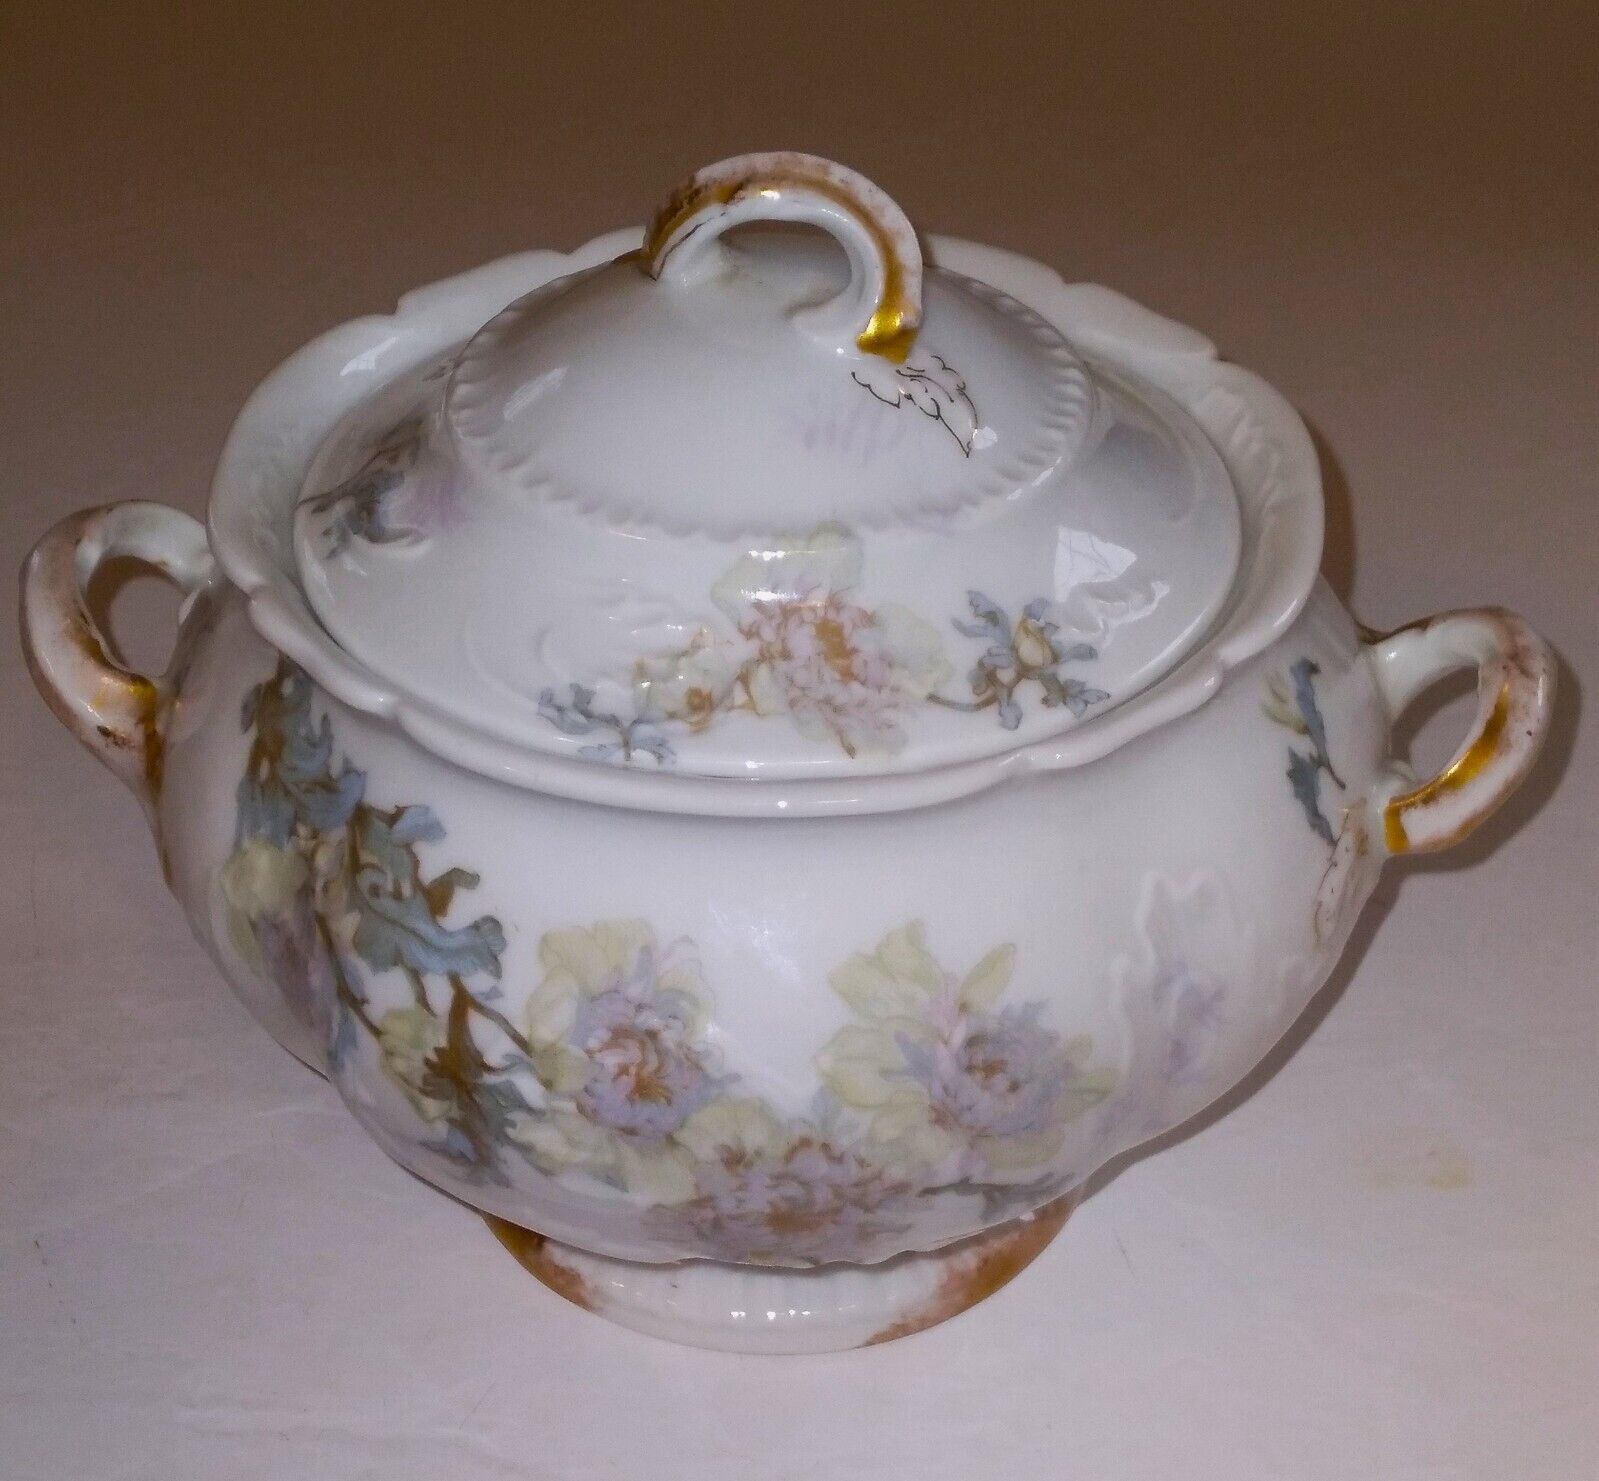 Theodore Haviland Limoges France Lidded Bowl Floral Design - late 1800's